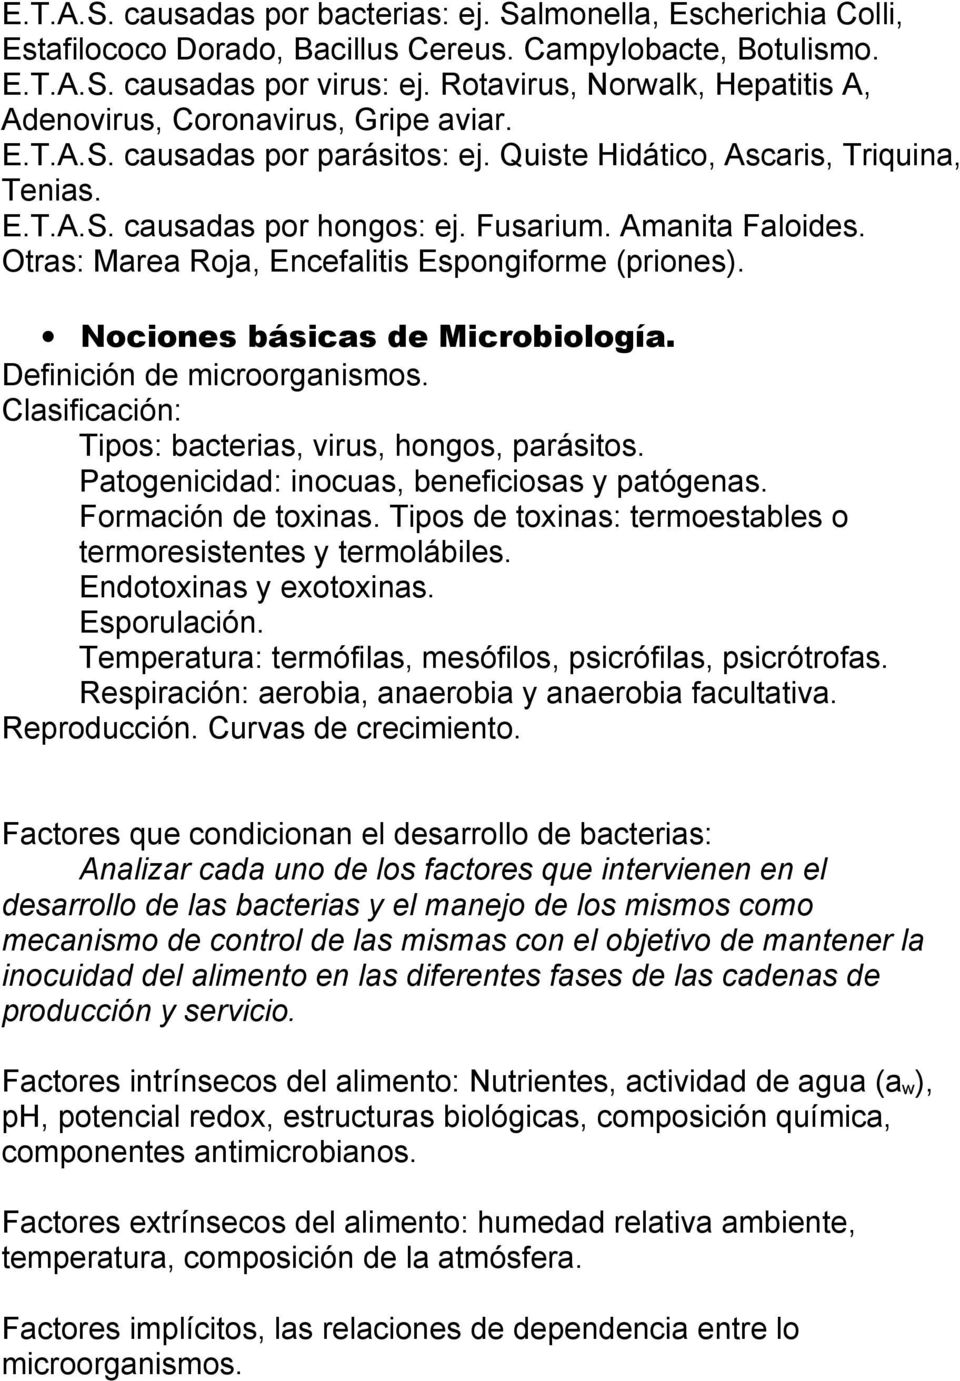 Amanita Faloides. Otras: Marea Roja, Encefalitis Espongiforme (priones). Nociones básicas de Microbiología. Definición de microorganismos. Clasificación: Tipos: bacterias, virus, hongos, parásitos.